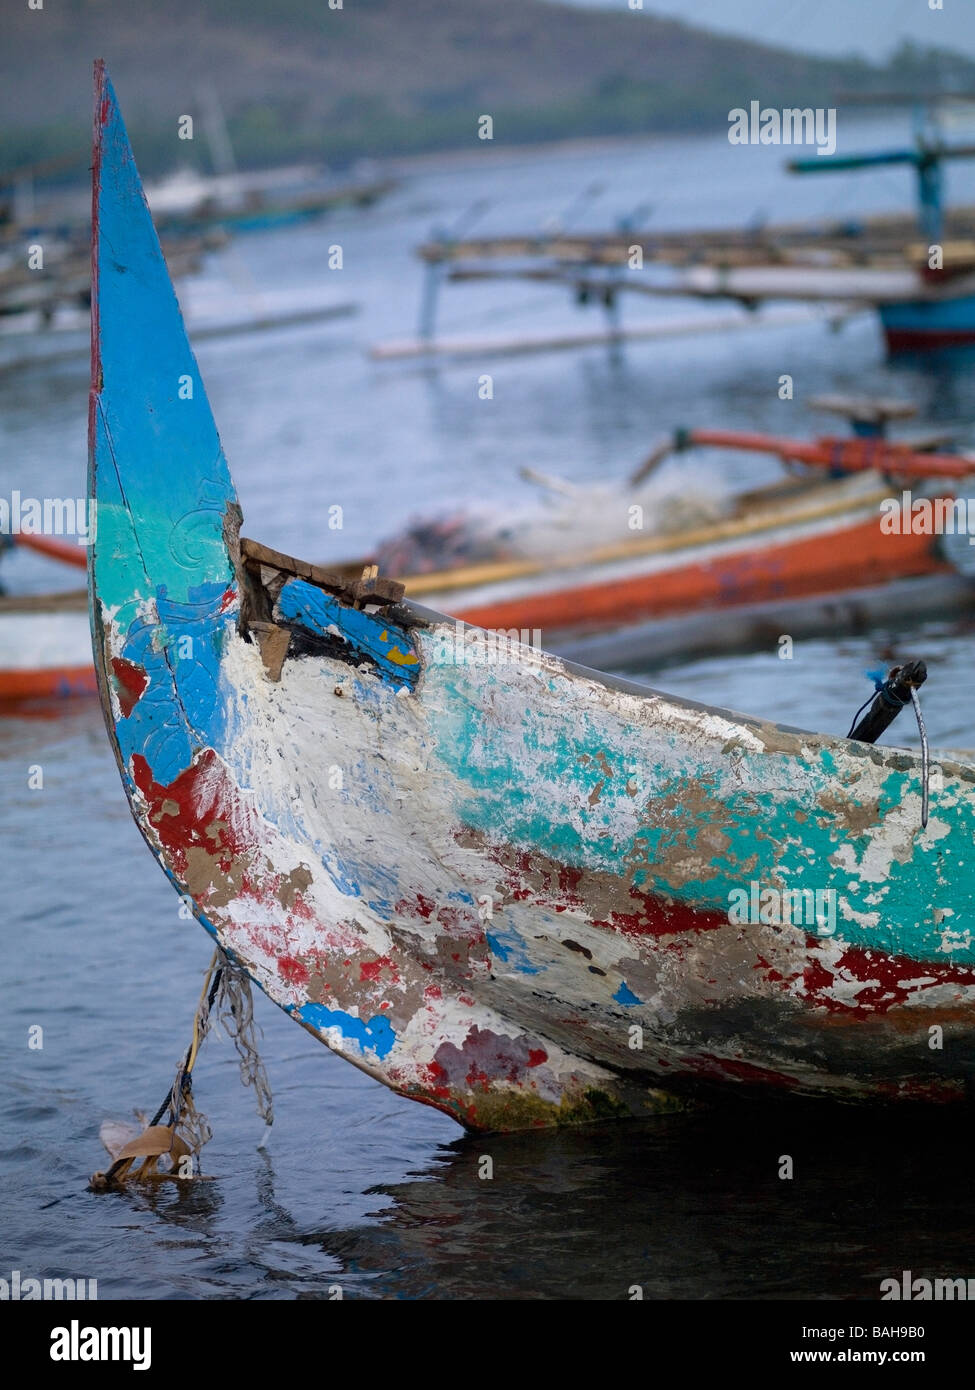 Mer de Java, Bali, Indonésie ; bateaux de pêche balinaise Banque D'Images